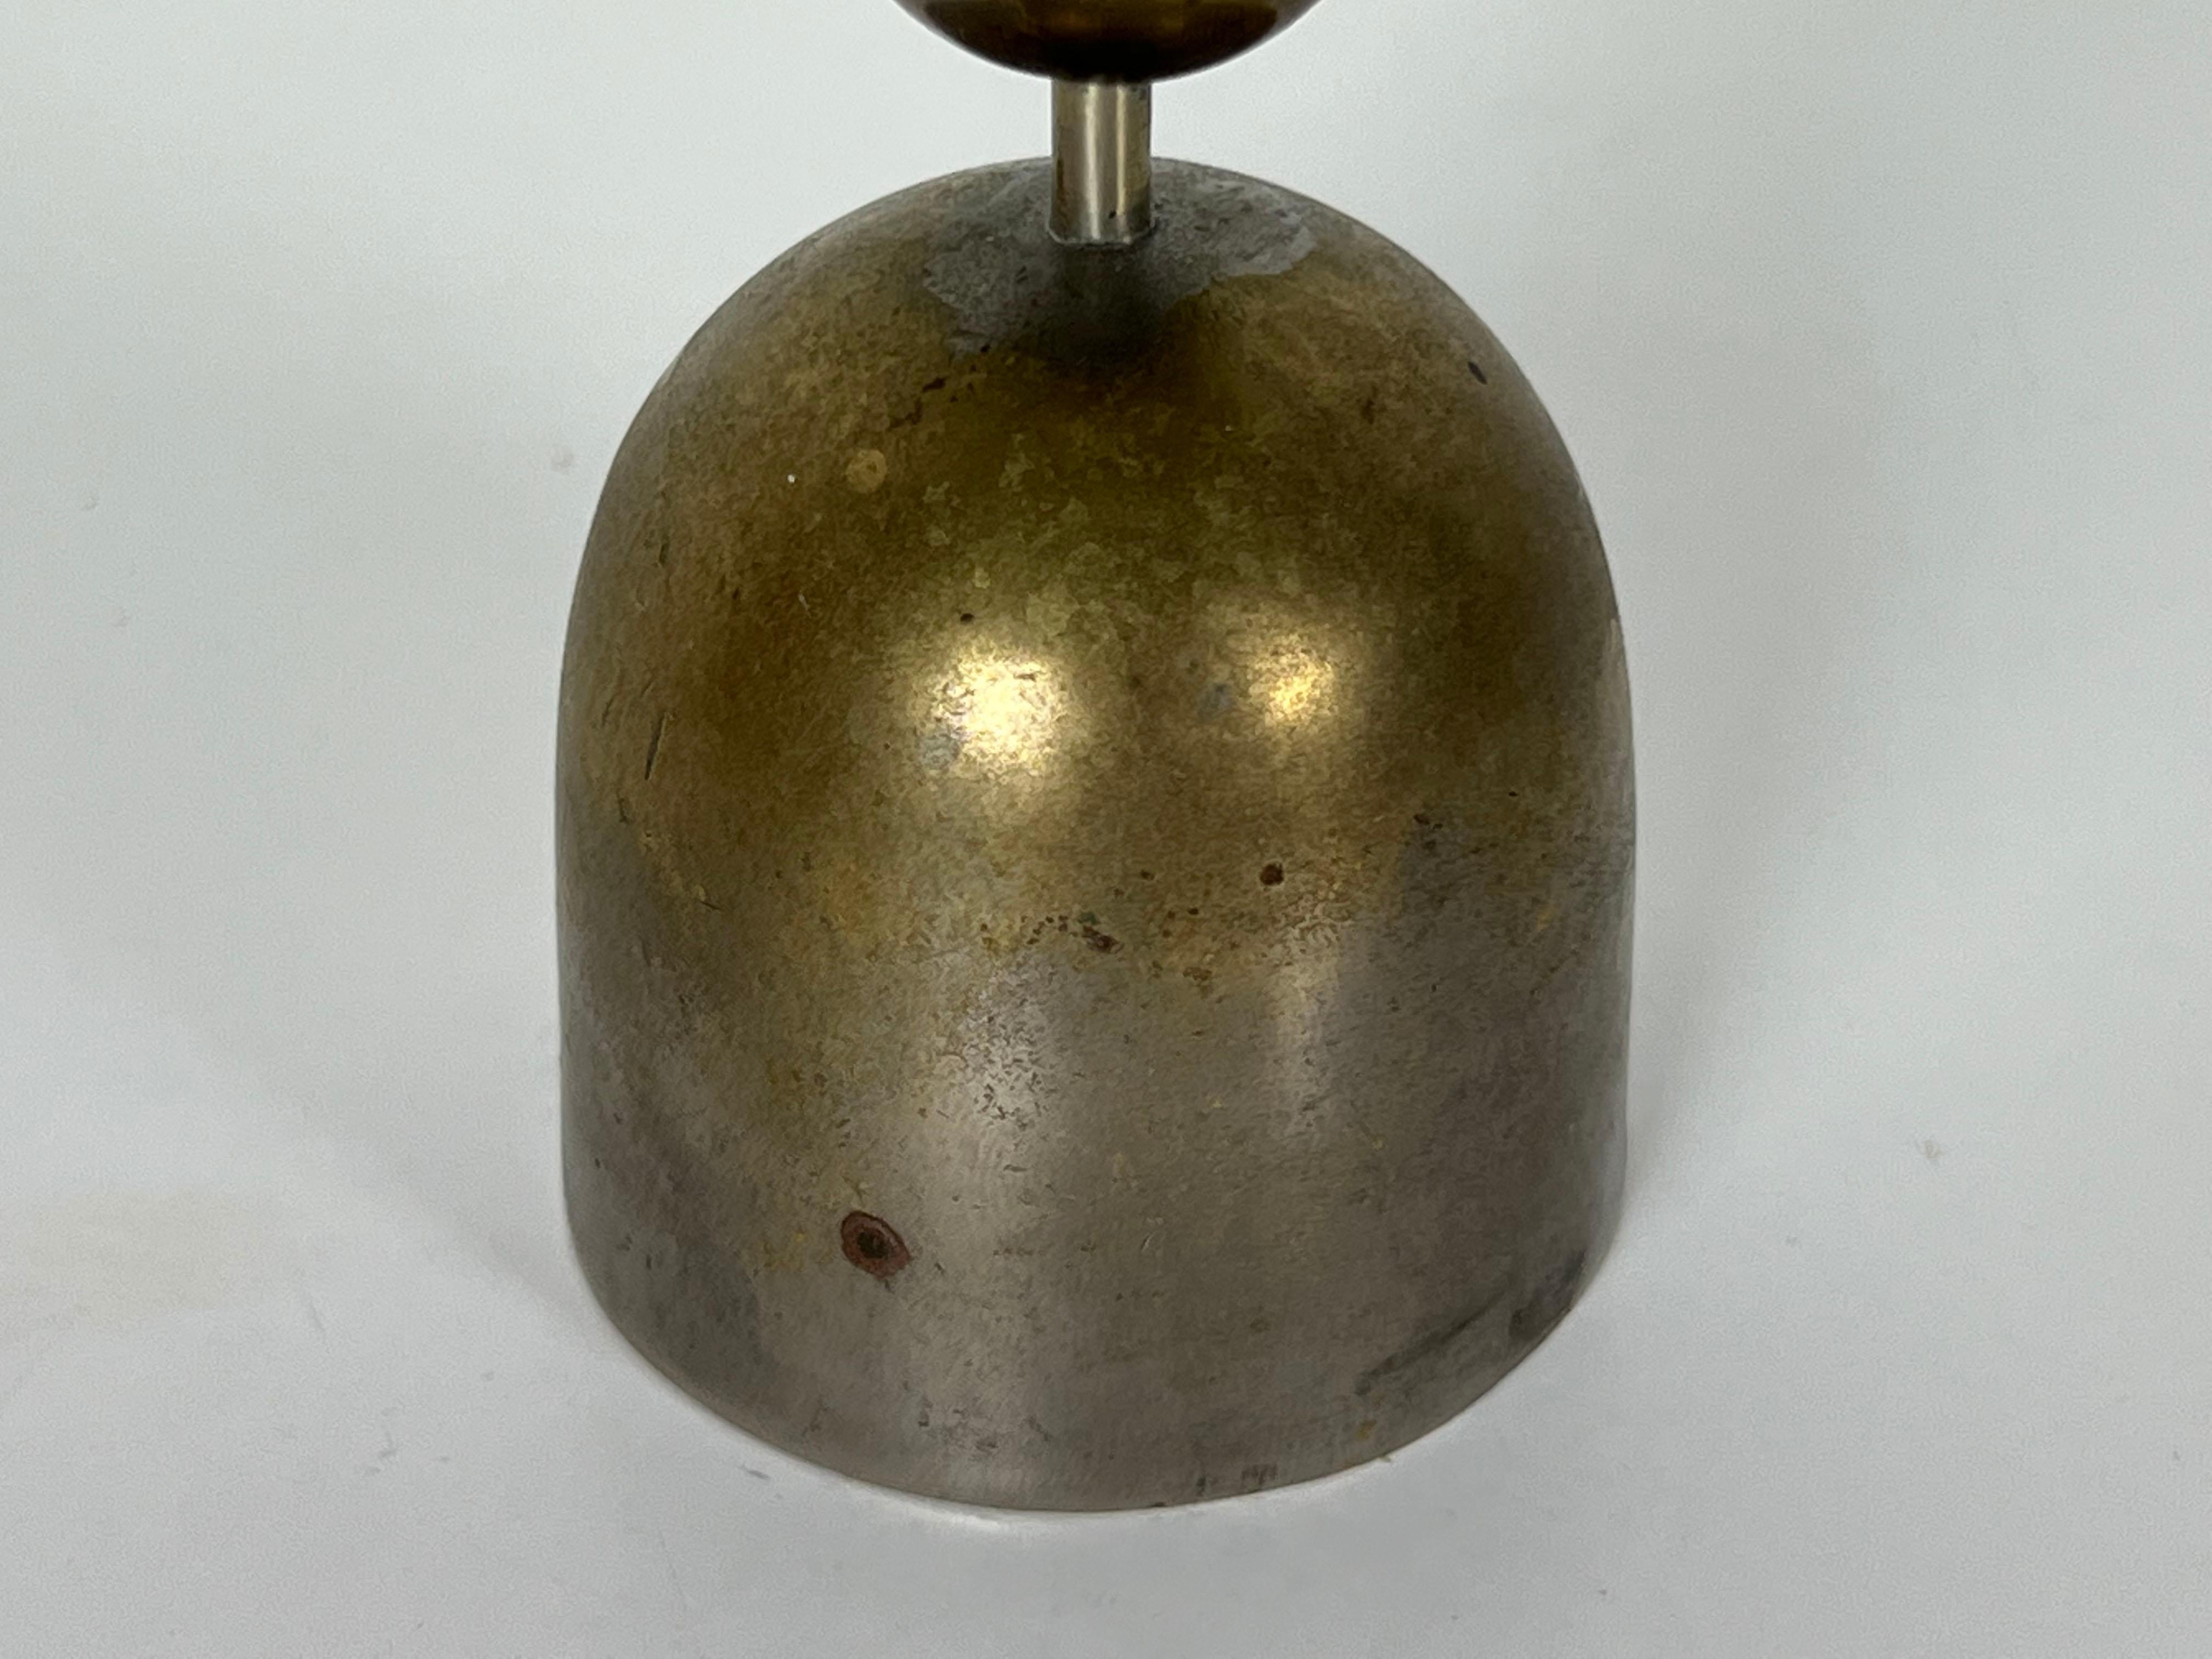 Austrian Brass Bell by Karl Hagenauer for Werkstatte Hagenauer